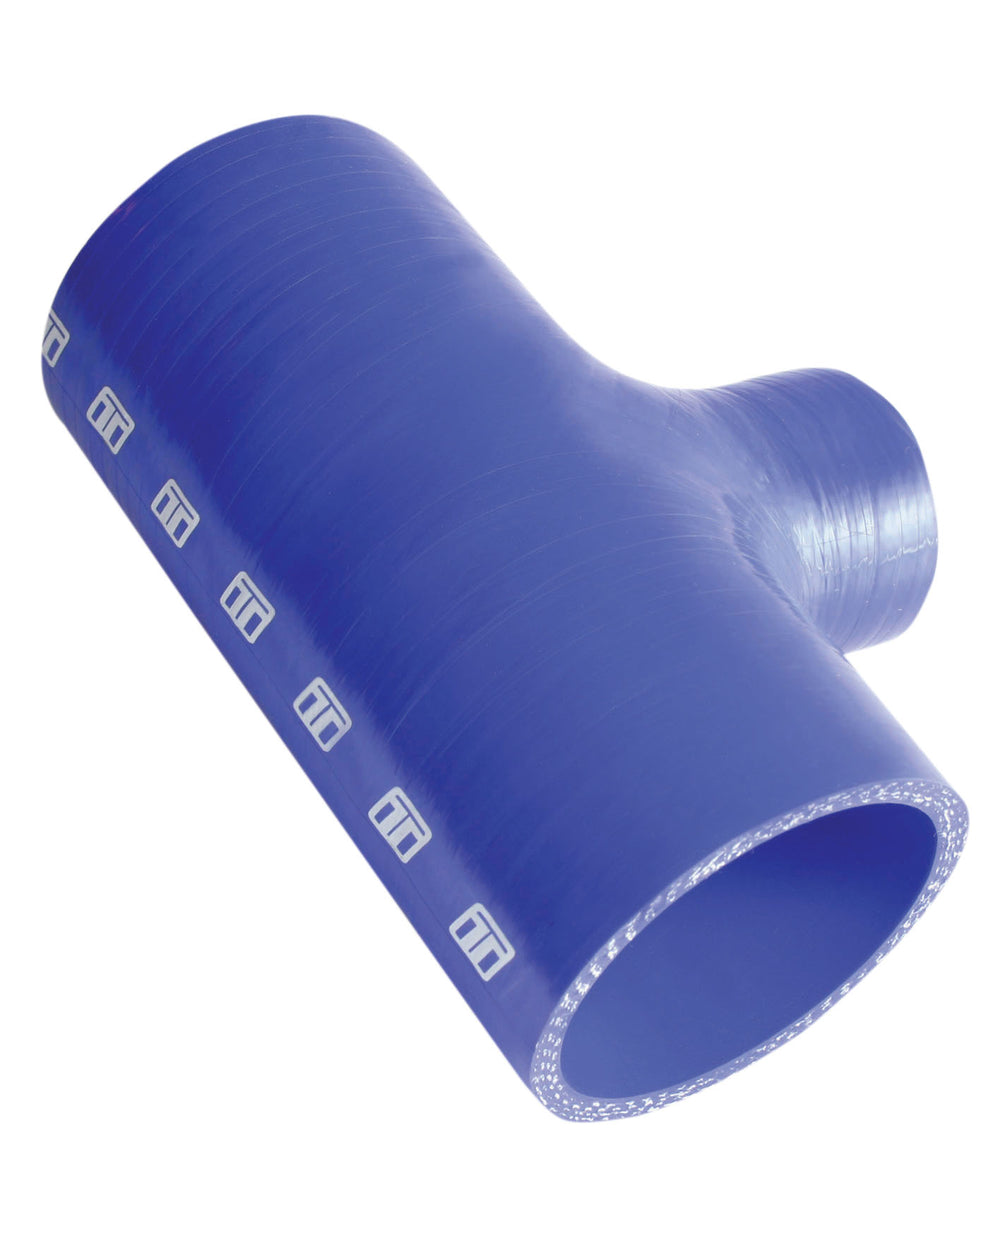 Turbosmart Intercooler Hose Kit (Hose Tee 2.00" ID 1.00" spout - Blue)